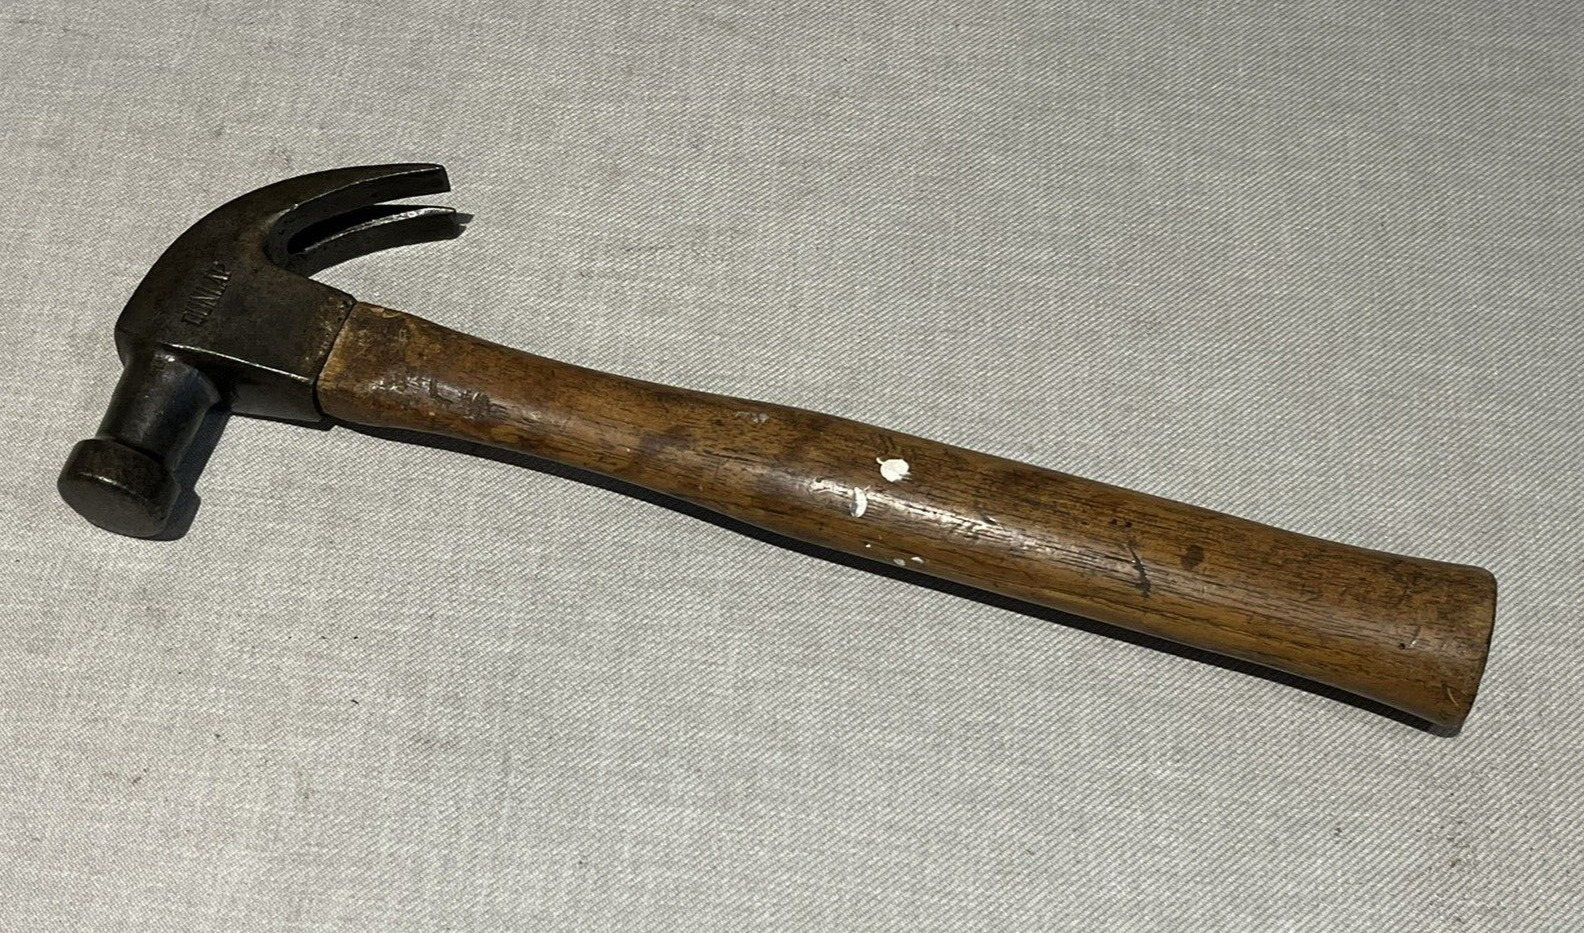 Vintage Dunlap 20 oz (?) Claw Hammer with Wood Handle - Estate Find